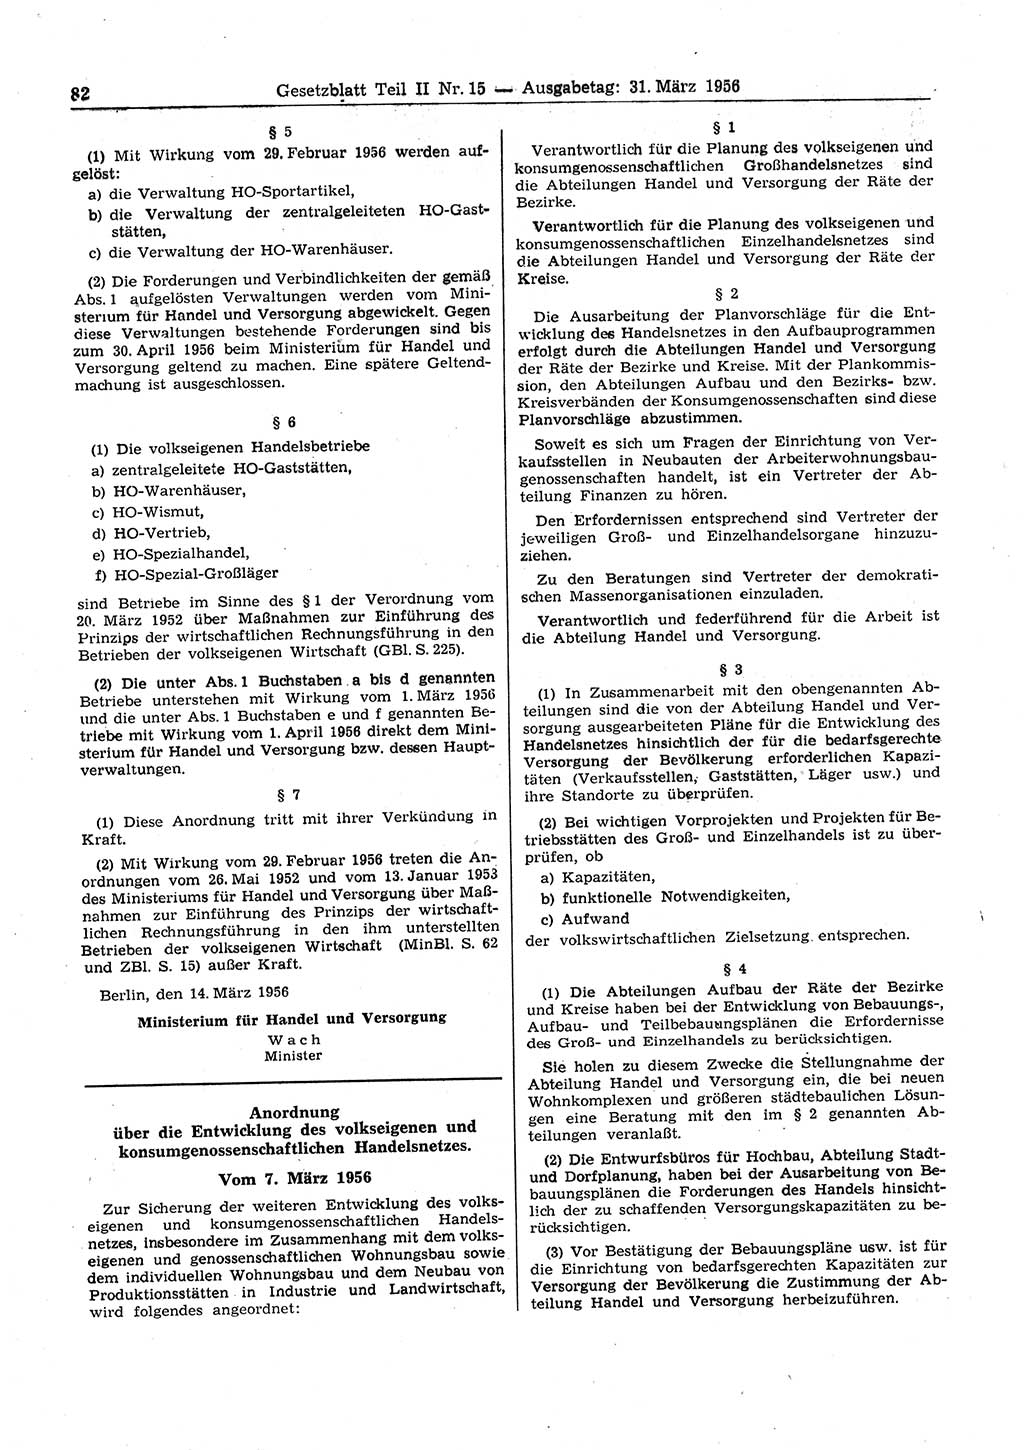 Gesetzblatt (GBl.) der Deutschen Demokratischen Republik (DDR) Teil ⅠⅠ 1956, Seite 82 (GBl. DDR ⅠⅠ 1956, S. 82)